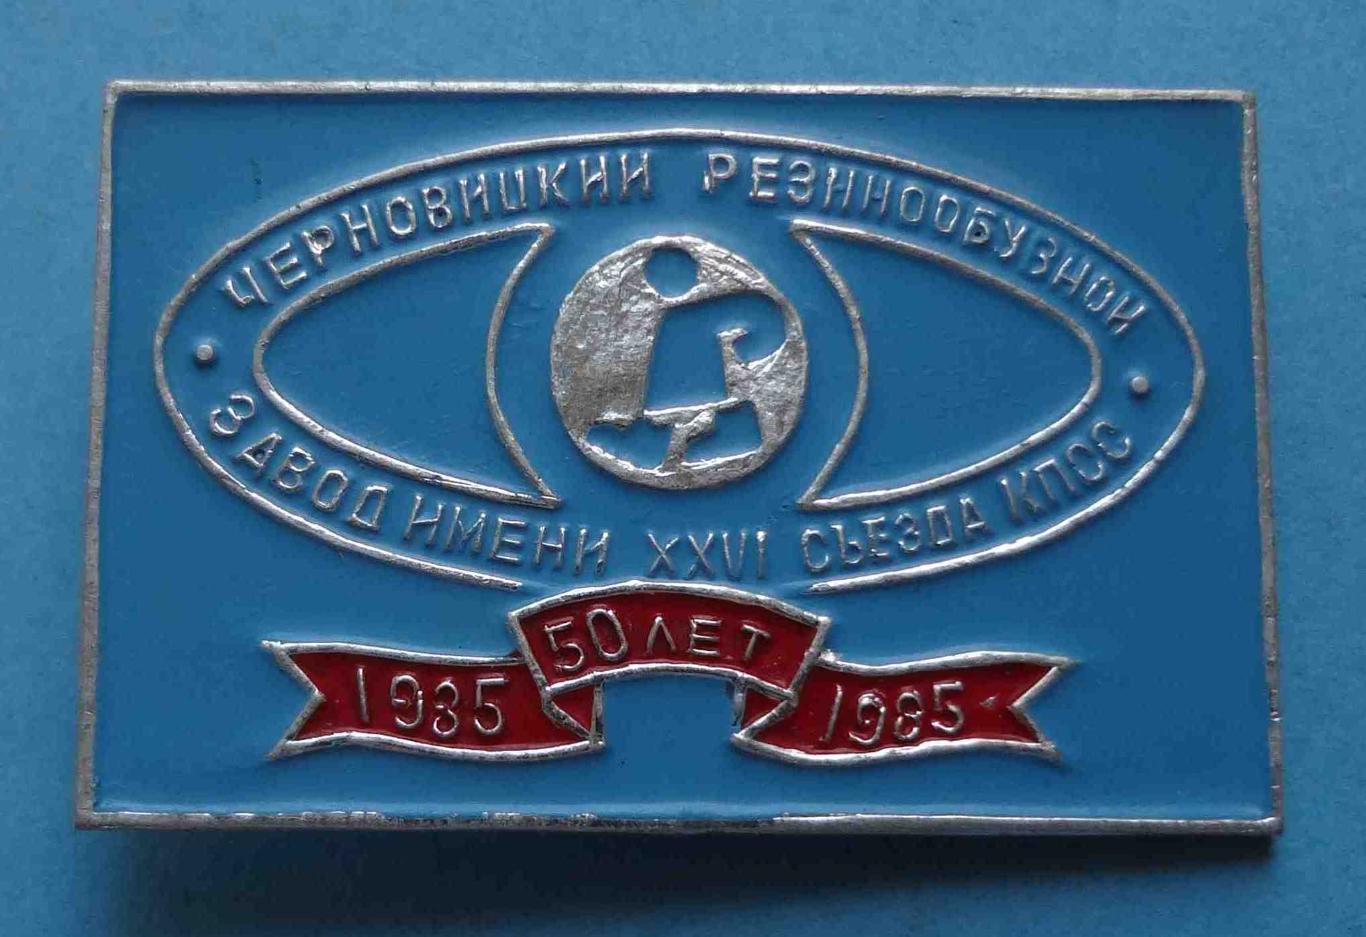 50 лет Черновицкий резинообувной завод им 26 съезда КПСС 1935-1985